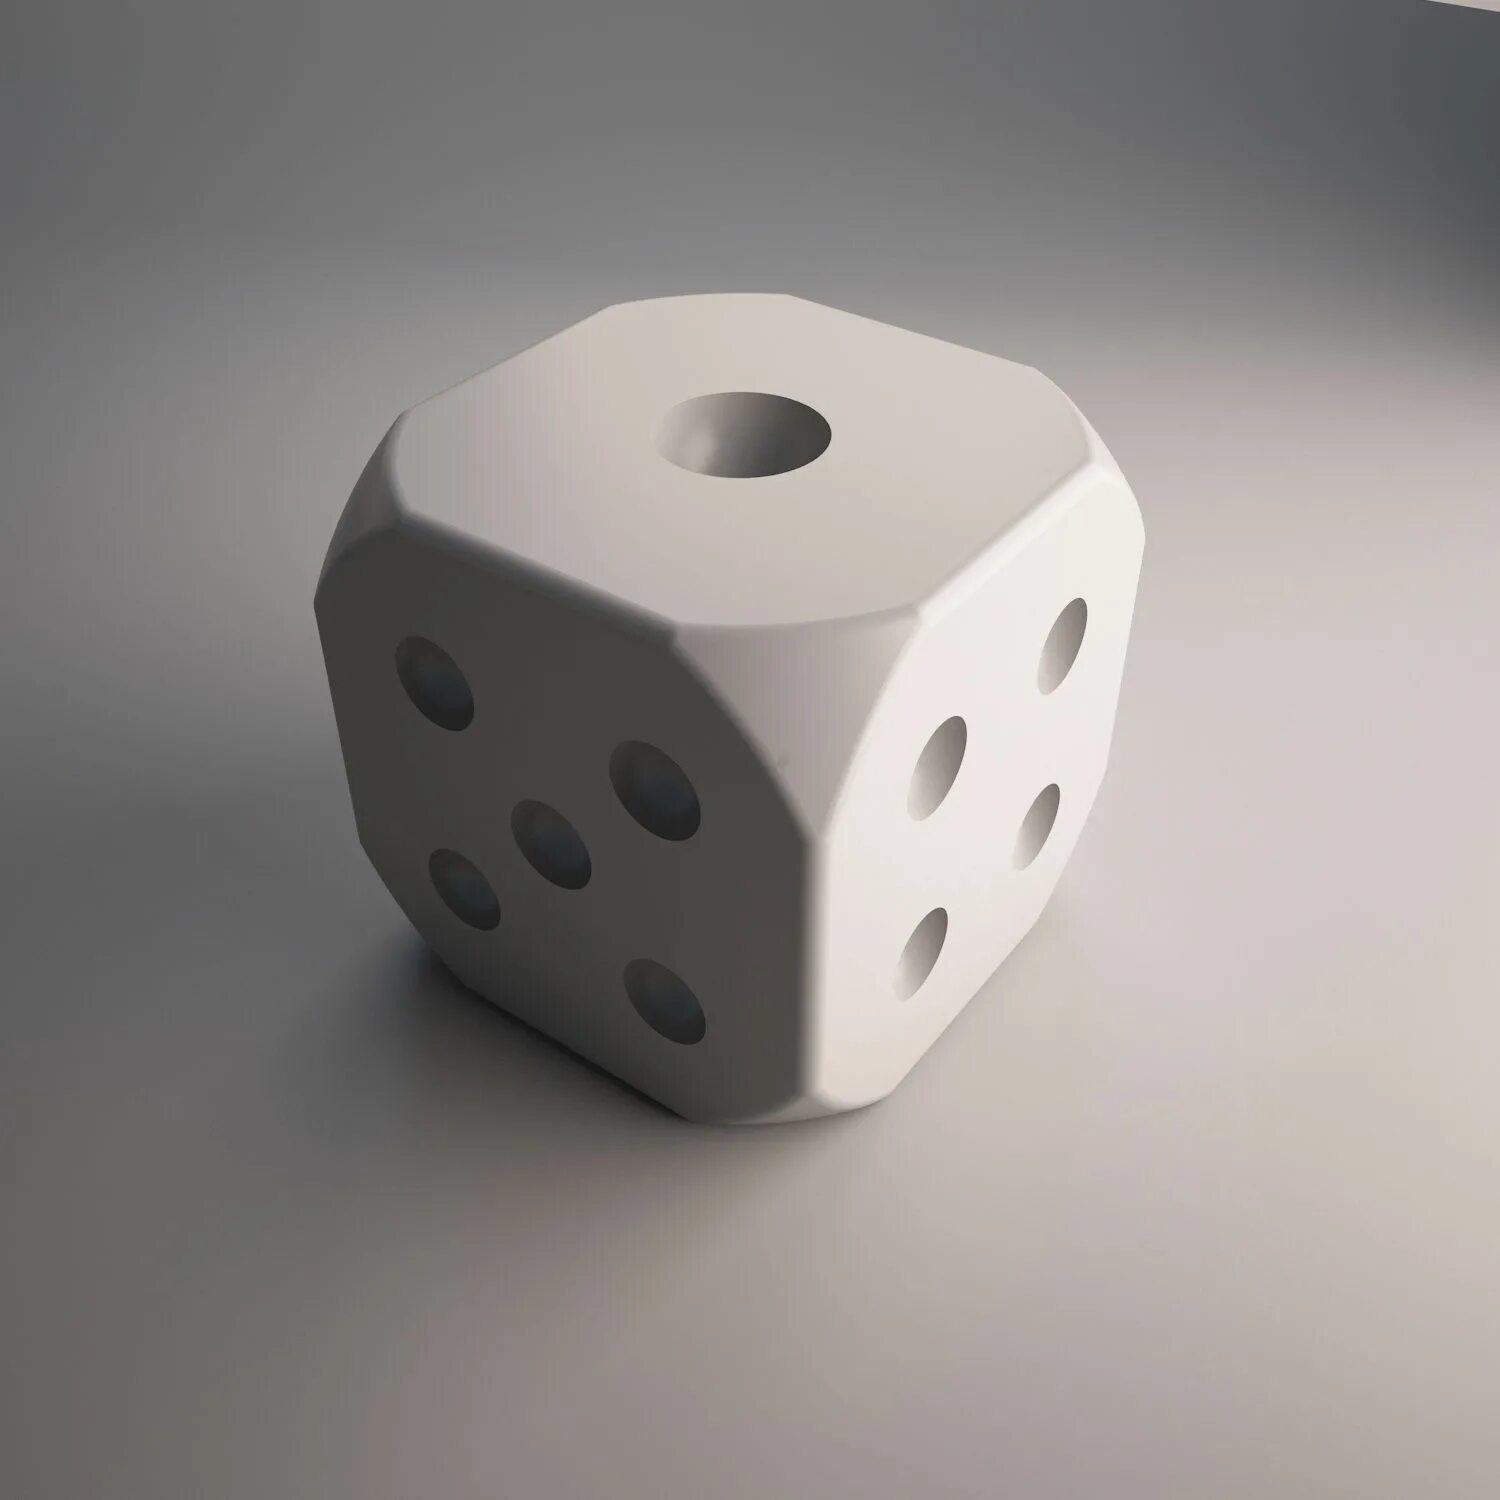 Slice and dice 3.0. Игральная кость модель для 3d принтера. D3 dice. Игральные кубики STL. Игральный кубик 3д модель.